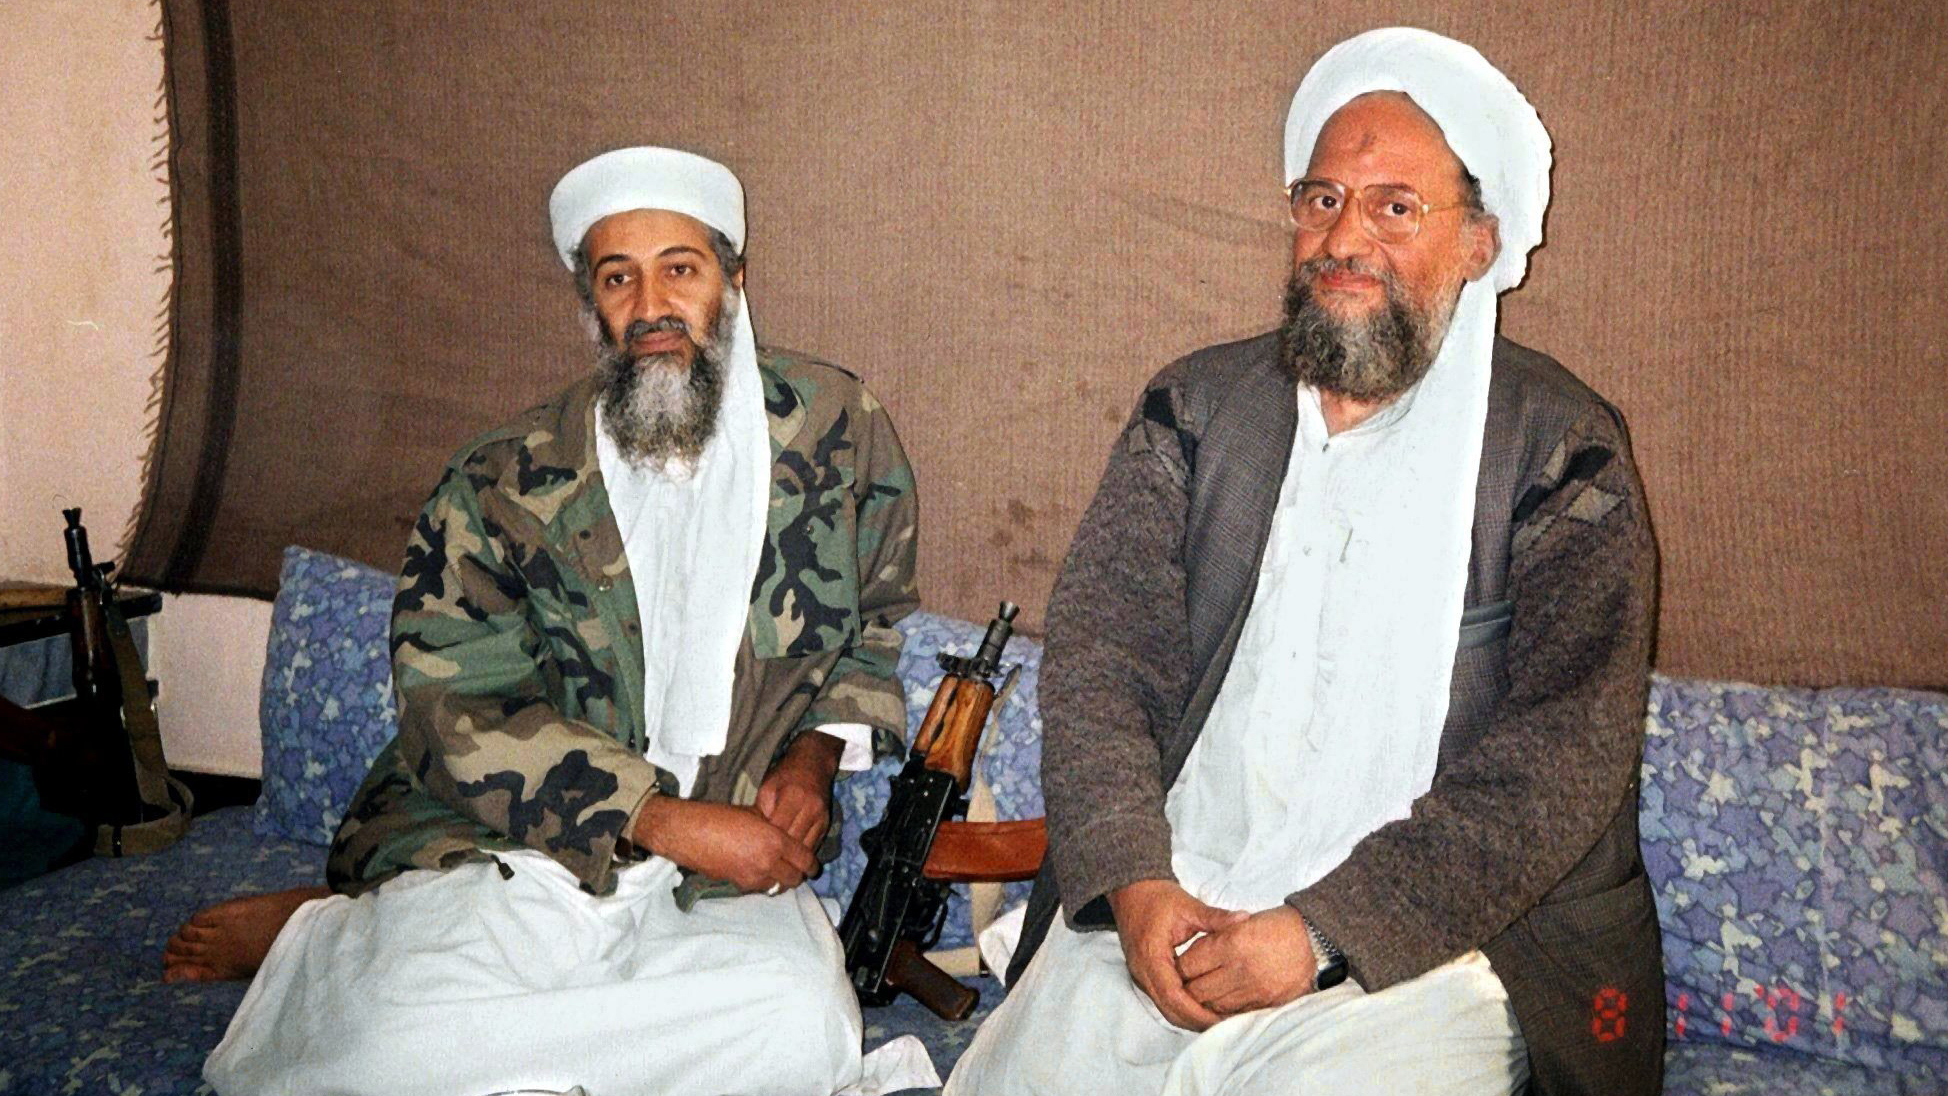 Al-Kaida-Chef Bin Laden und al-Sawahiri (rechts), damals noch Stellvertreter, an einem unbekannten Ort in Afghanistan. Aufgenommen am 08.11.2001.